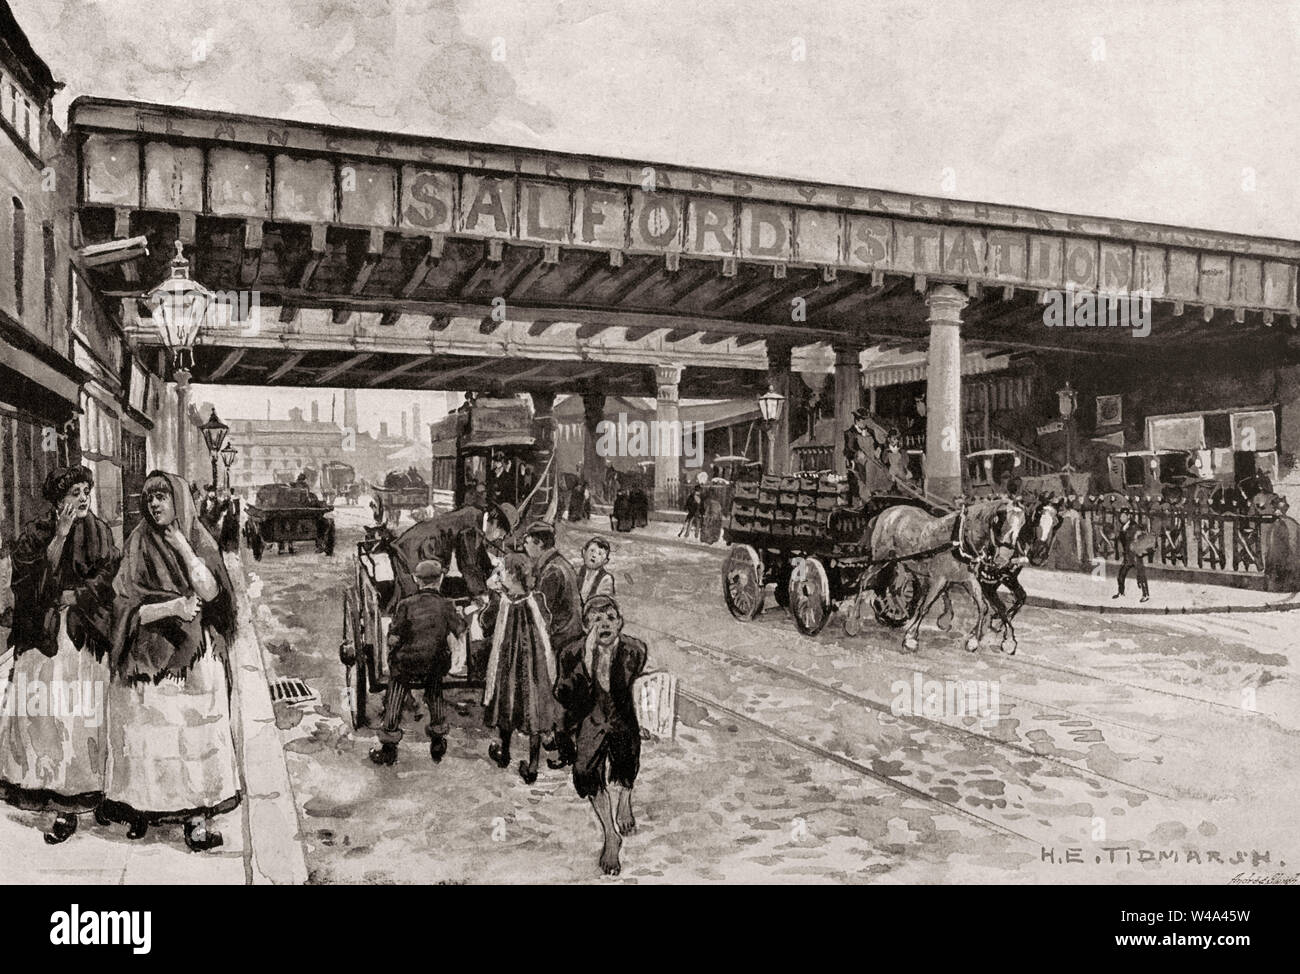 Salford stazione ferroviaria centrale, Salford, Greater Manchester, Inghilterra, Regno Unito, secolo XIX Foto Stock